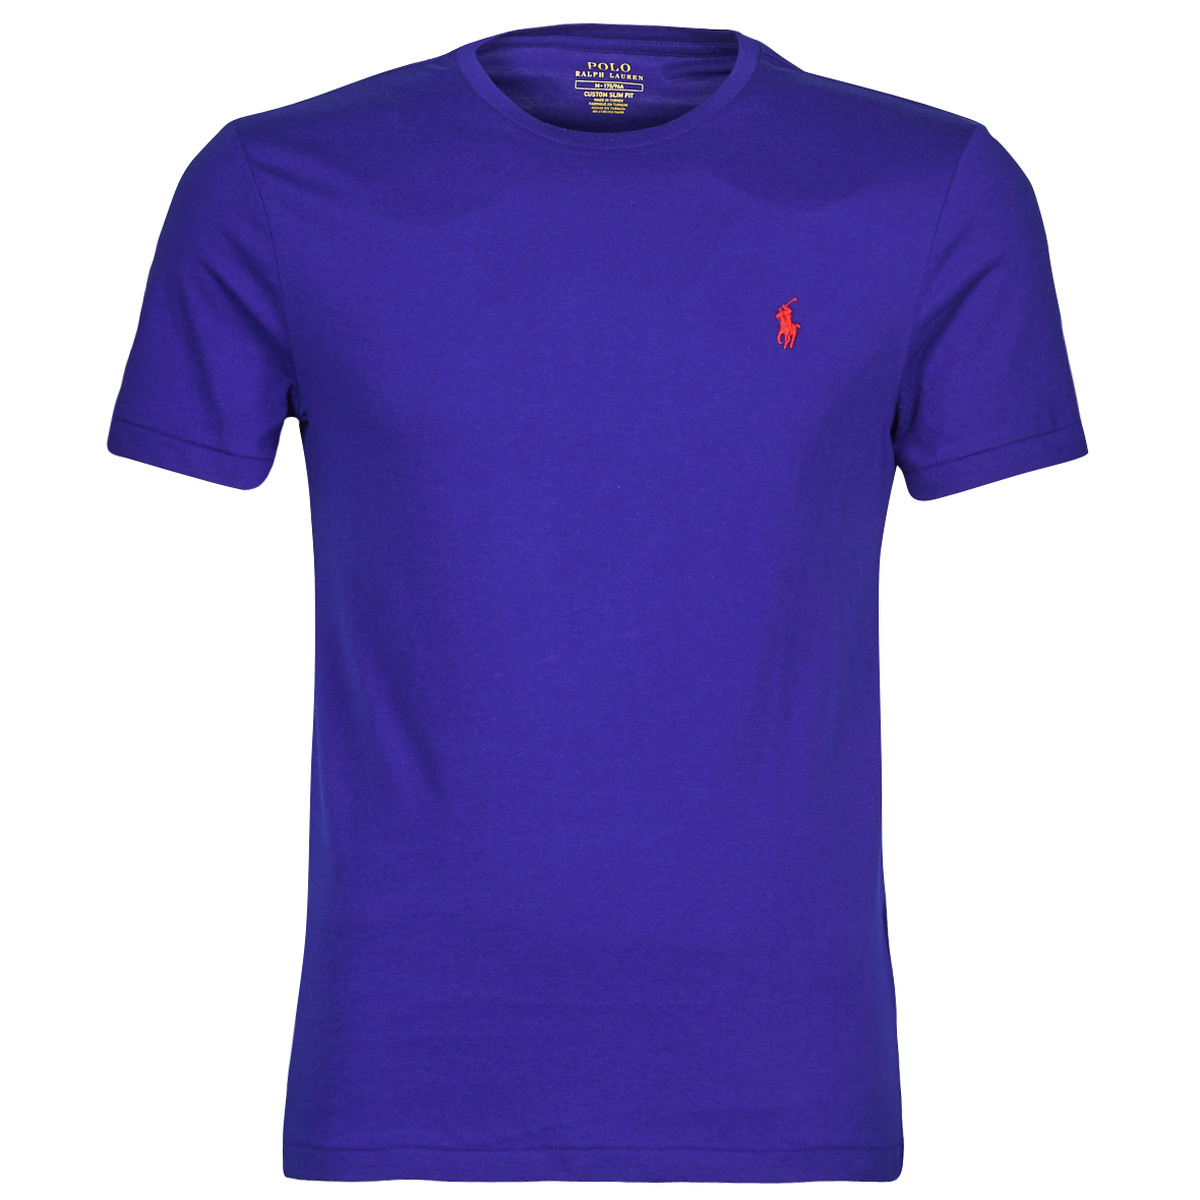 Vêtements Homme embroidered-logo long-sleeve polo SOPELA Bleu